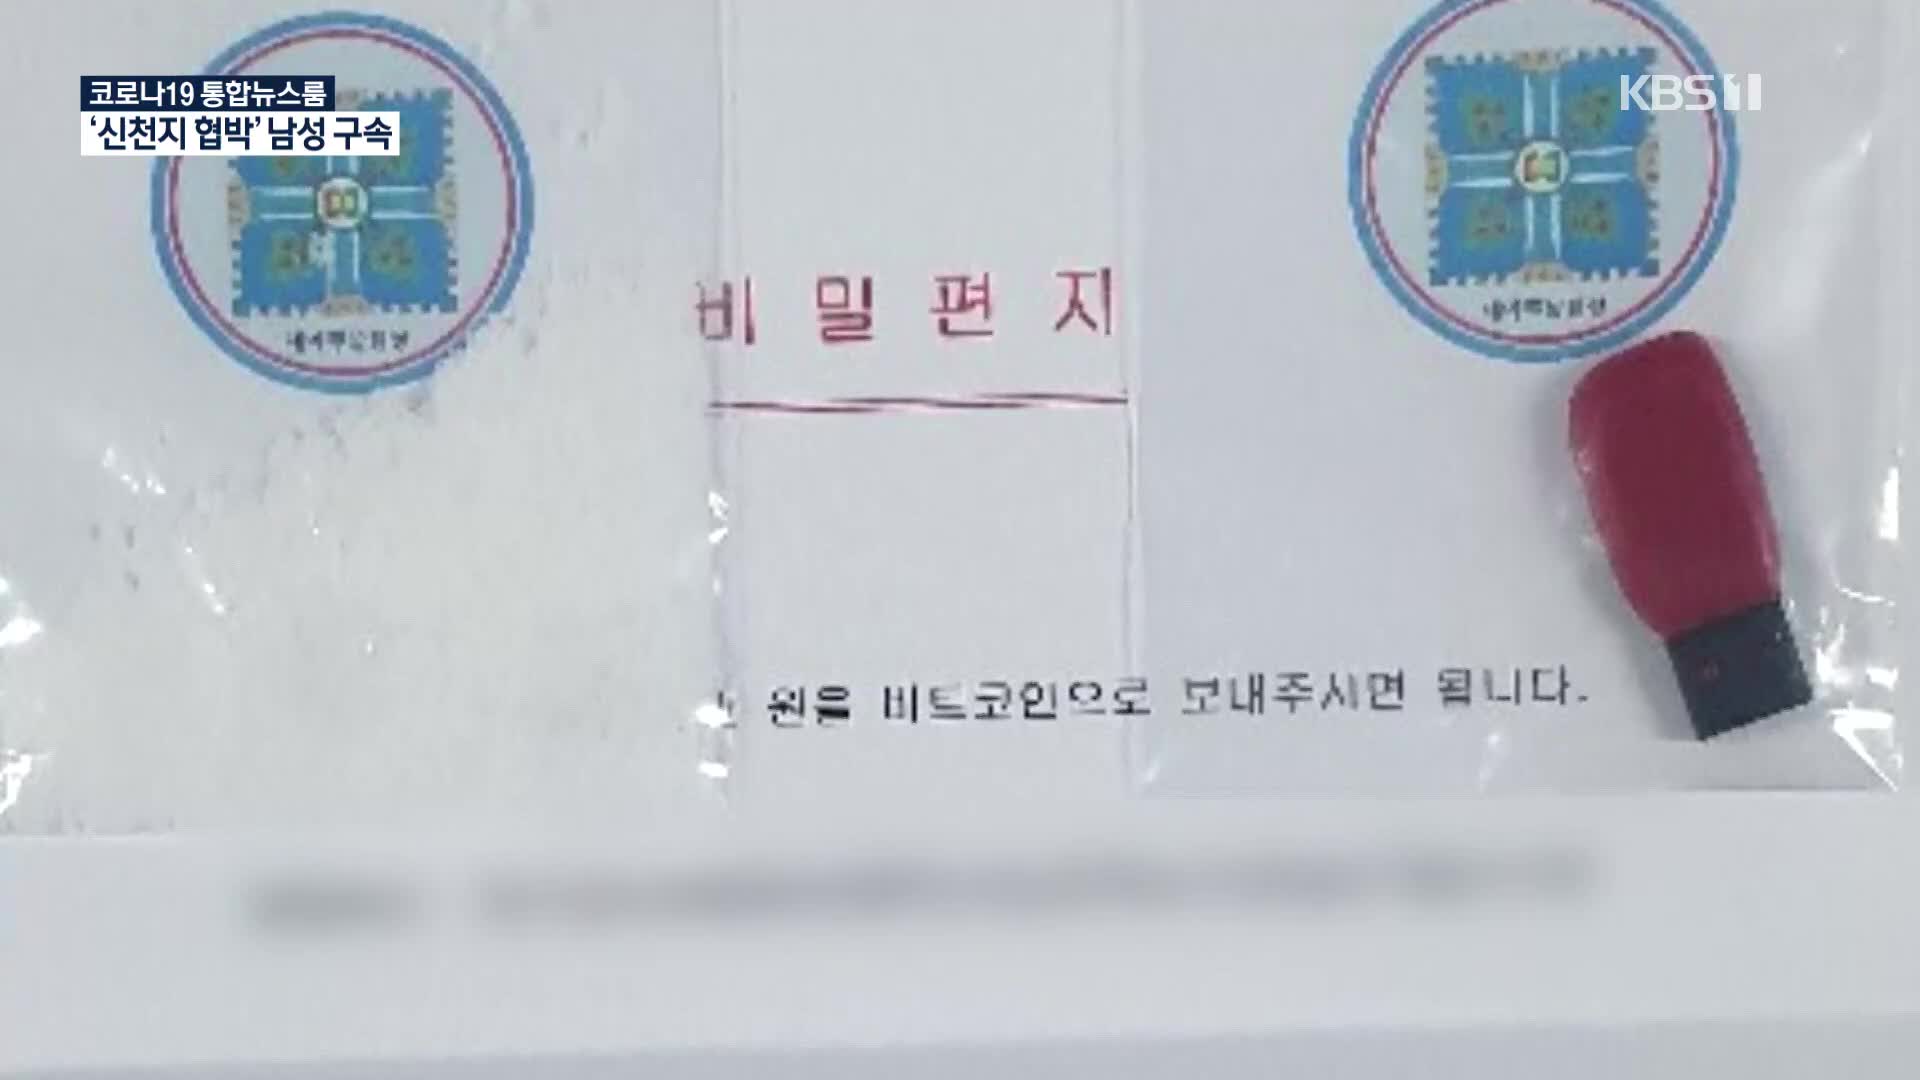 ‘신천지 청산가리 협박편지’ 50대 남성 구속